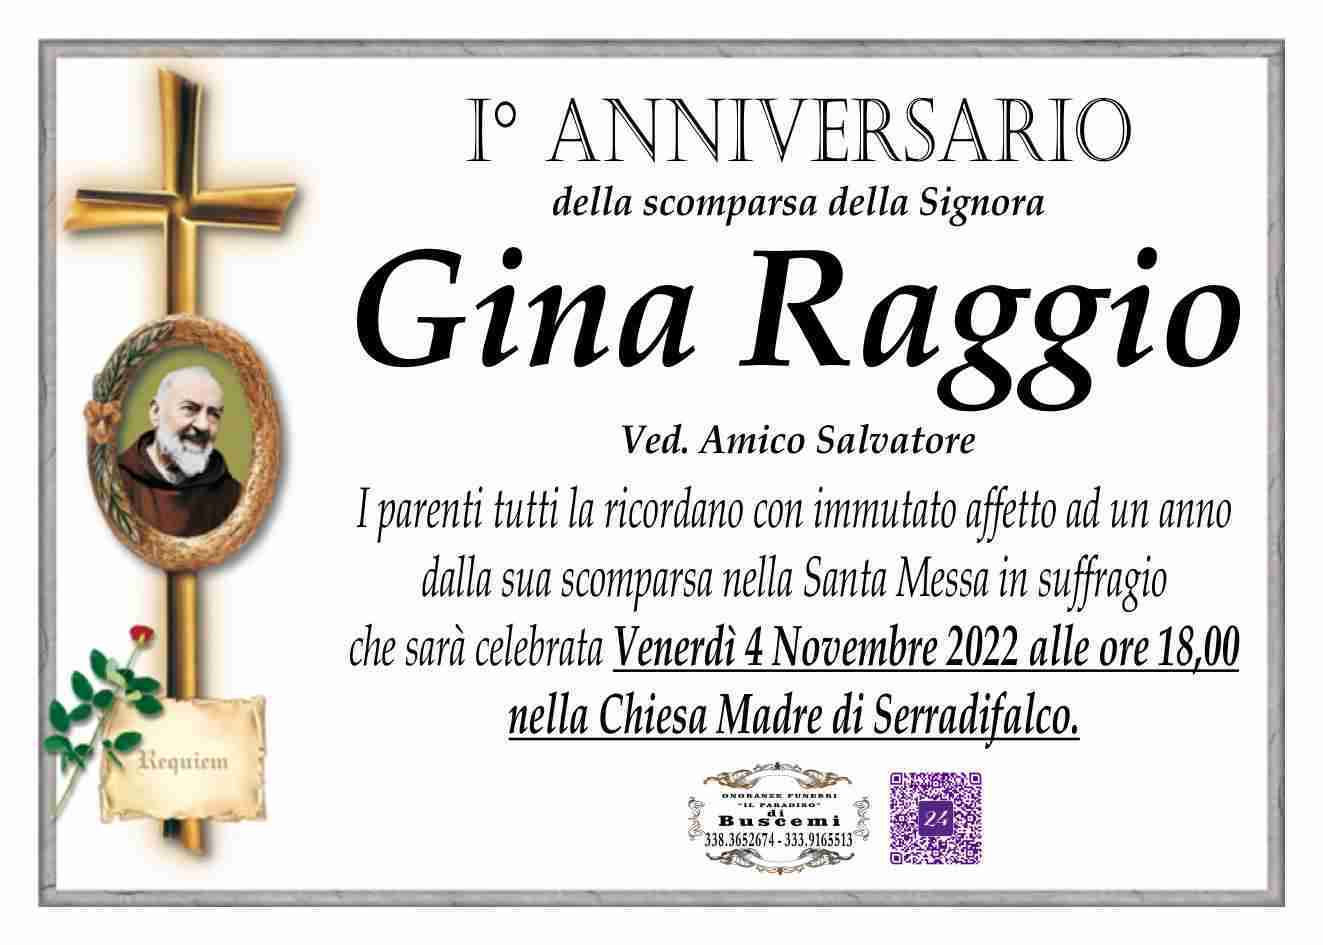 Luigia Raggio